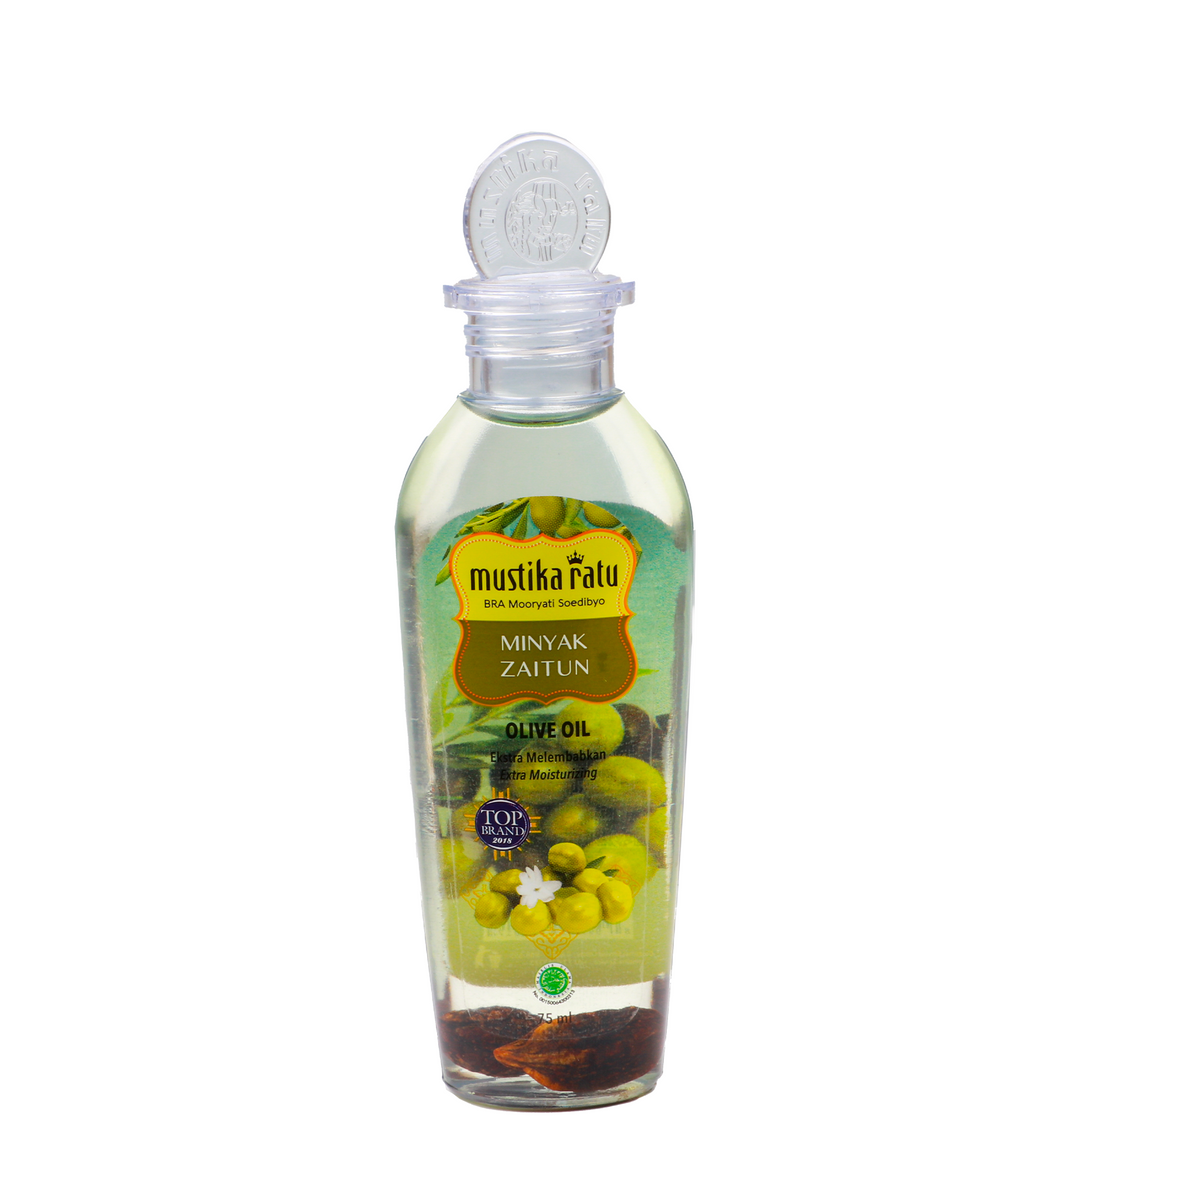 Mustika Ratu Minyak Zaitun Olive Oil 75Ml